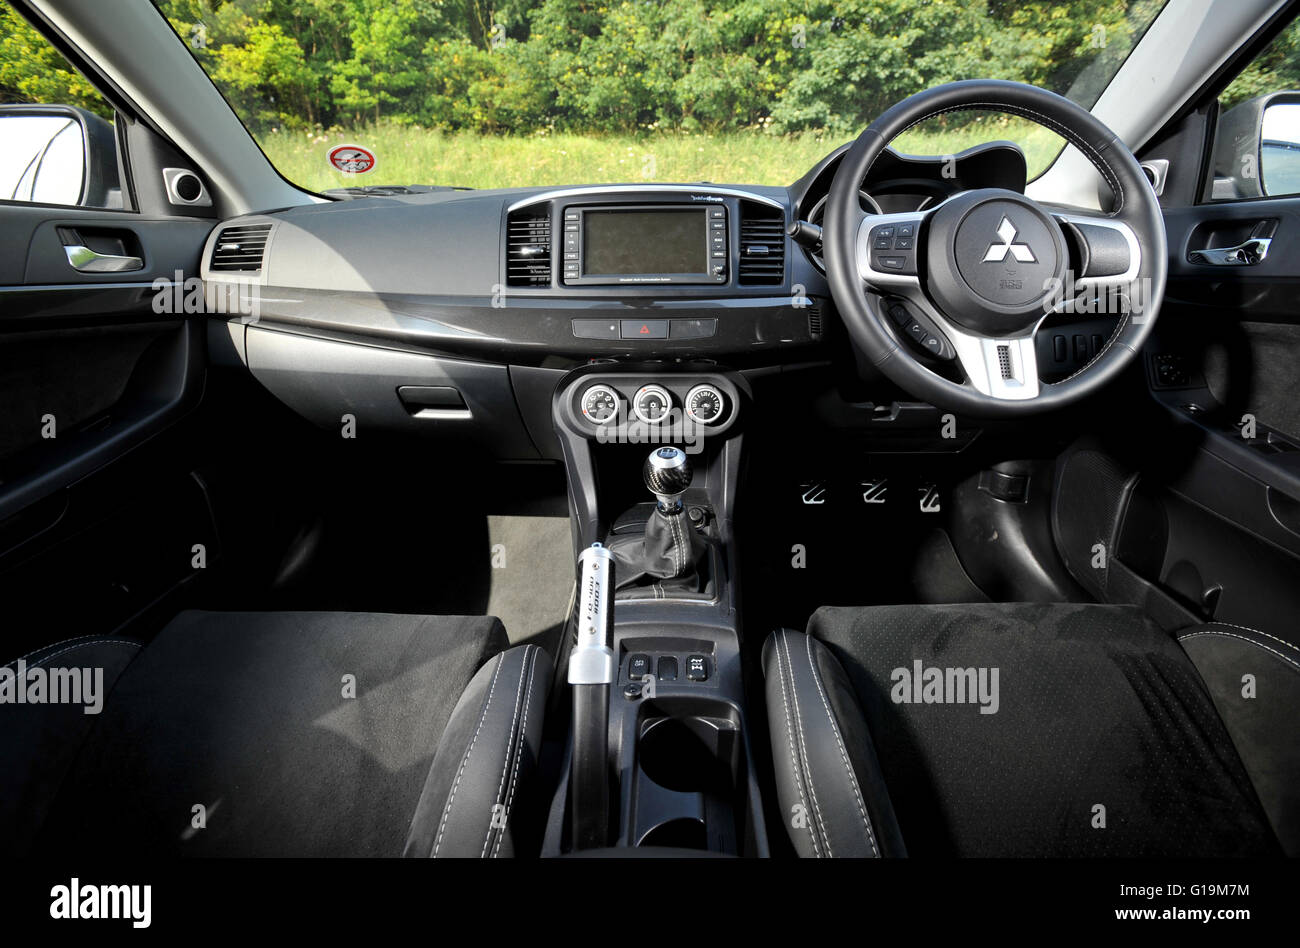 Mitsubishi Evo X Japanese 4 wheel drive super saloon interior Stock Photo -  Alamy